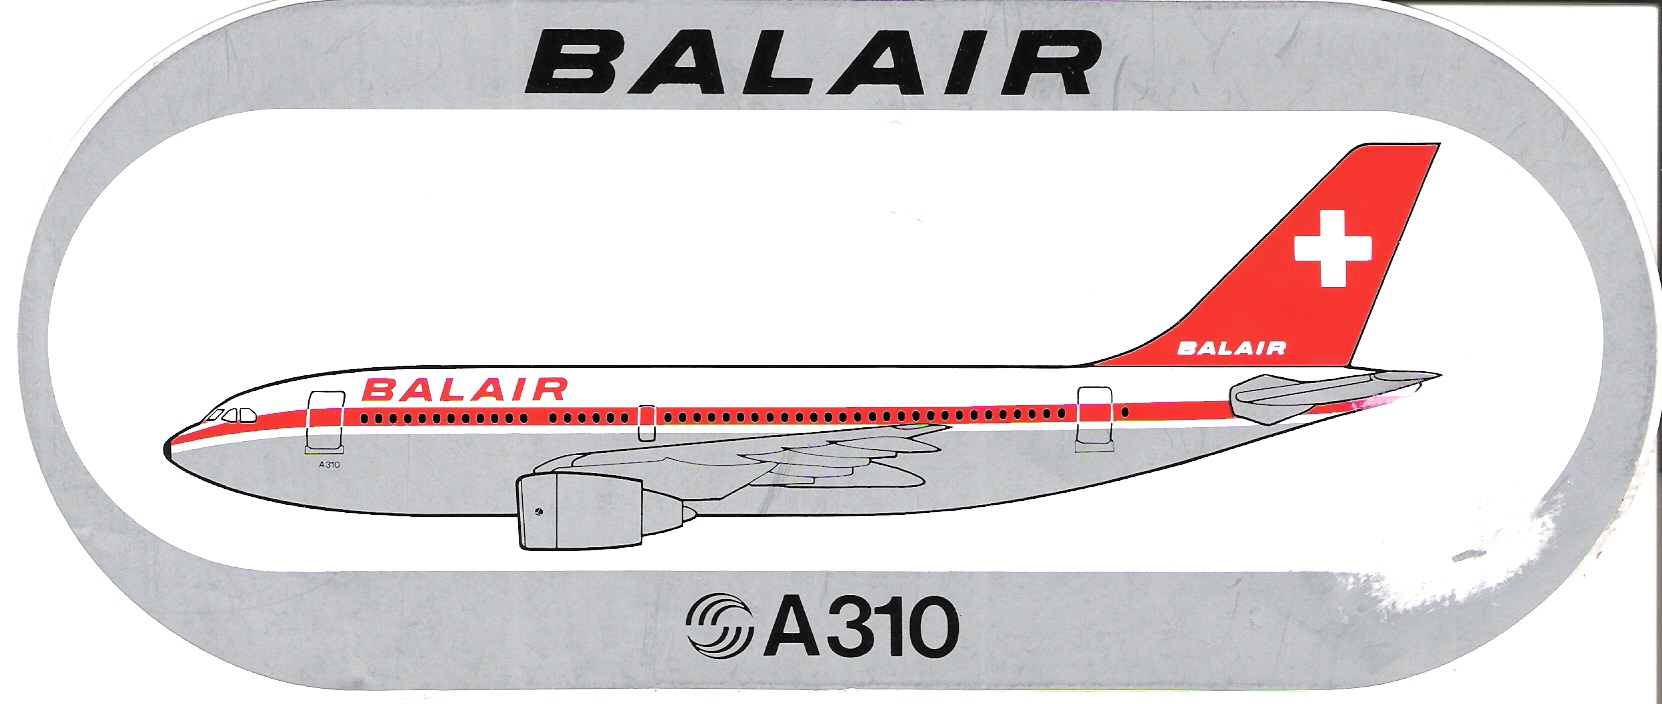 Balair A310